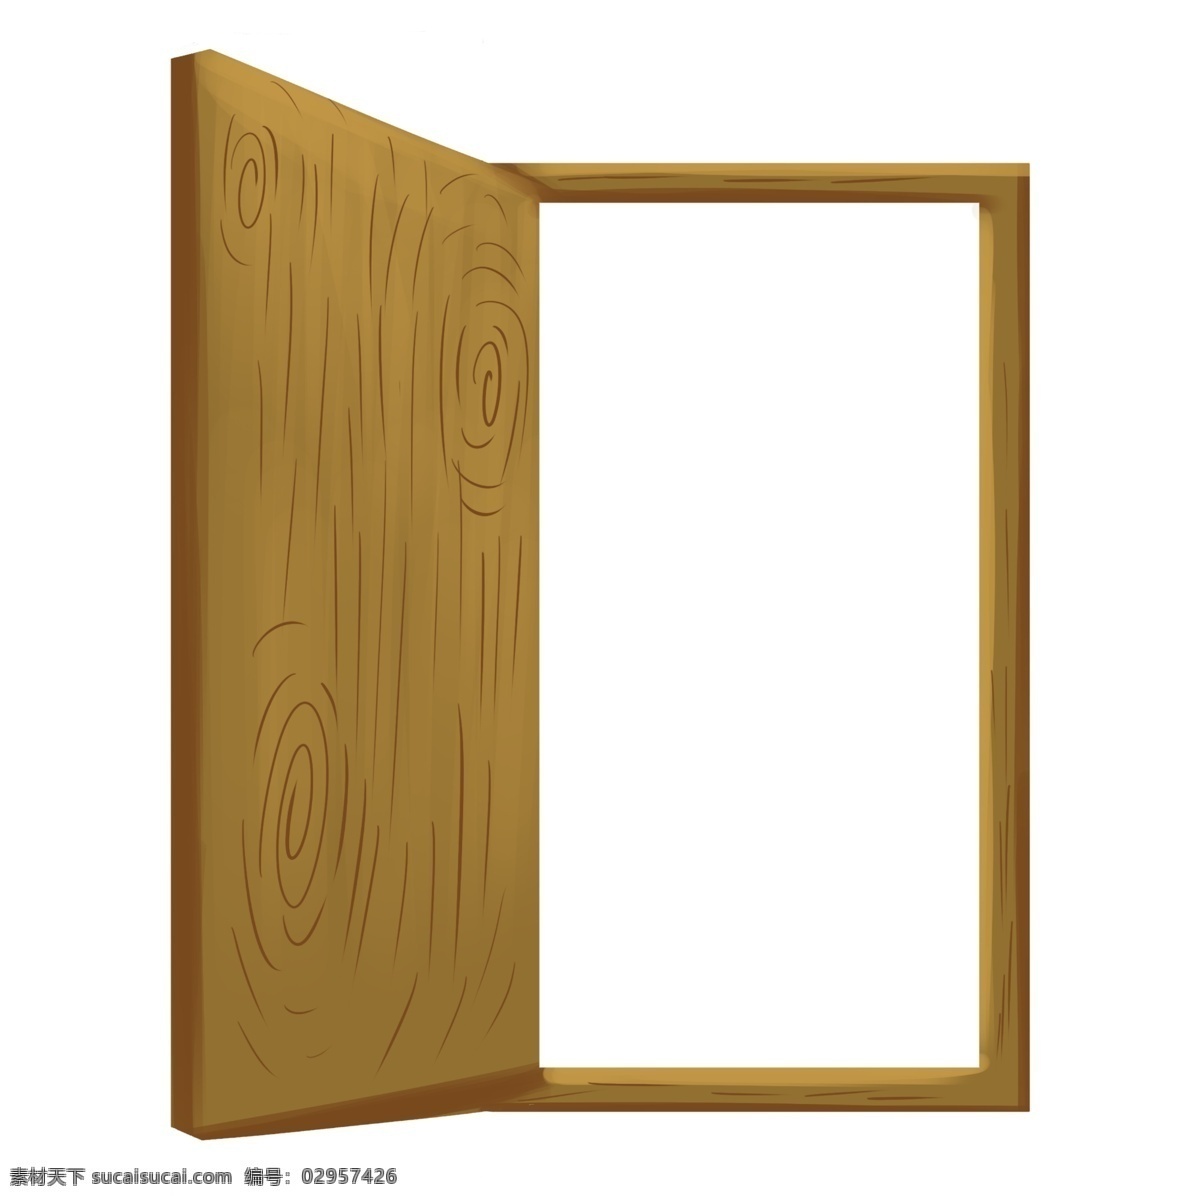 木质 房门 卡通 插画 木质的房门 卡通插画 木质插画 木质产品 木材 木块 木头 好看的房门